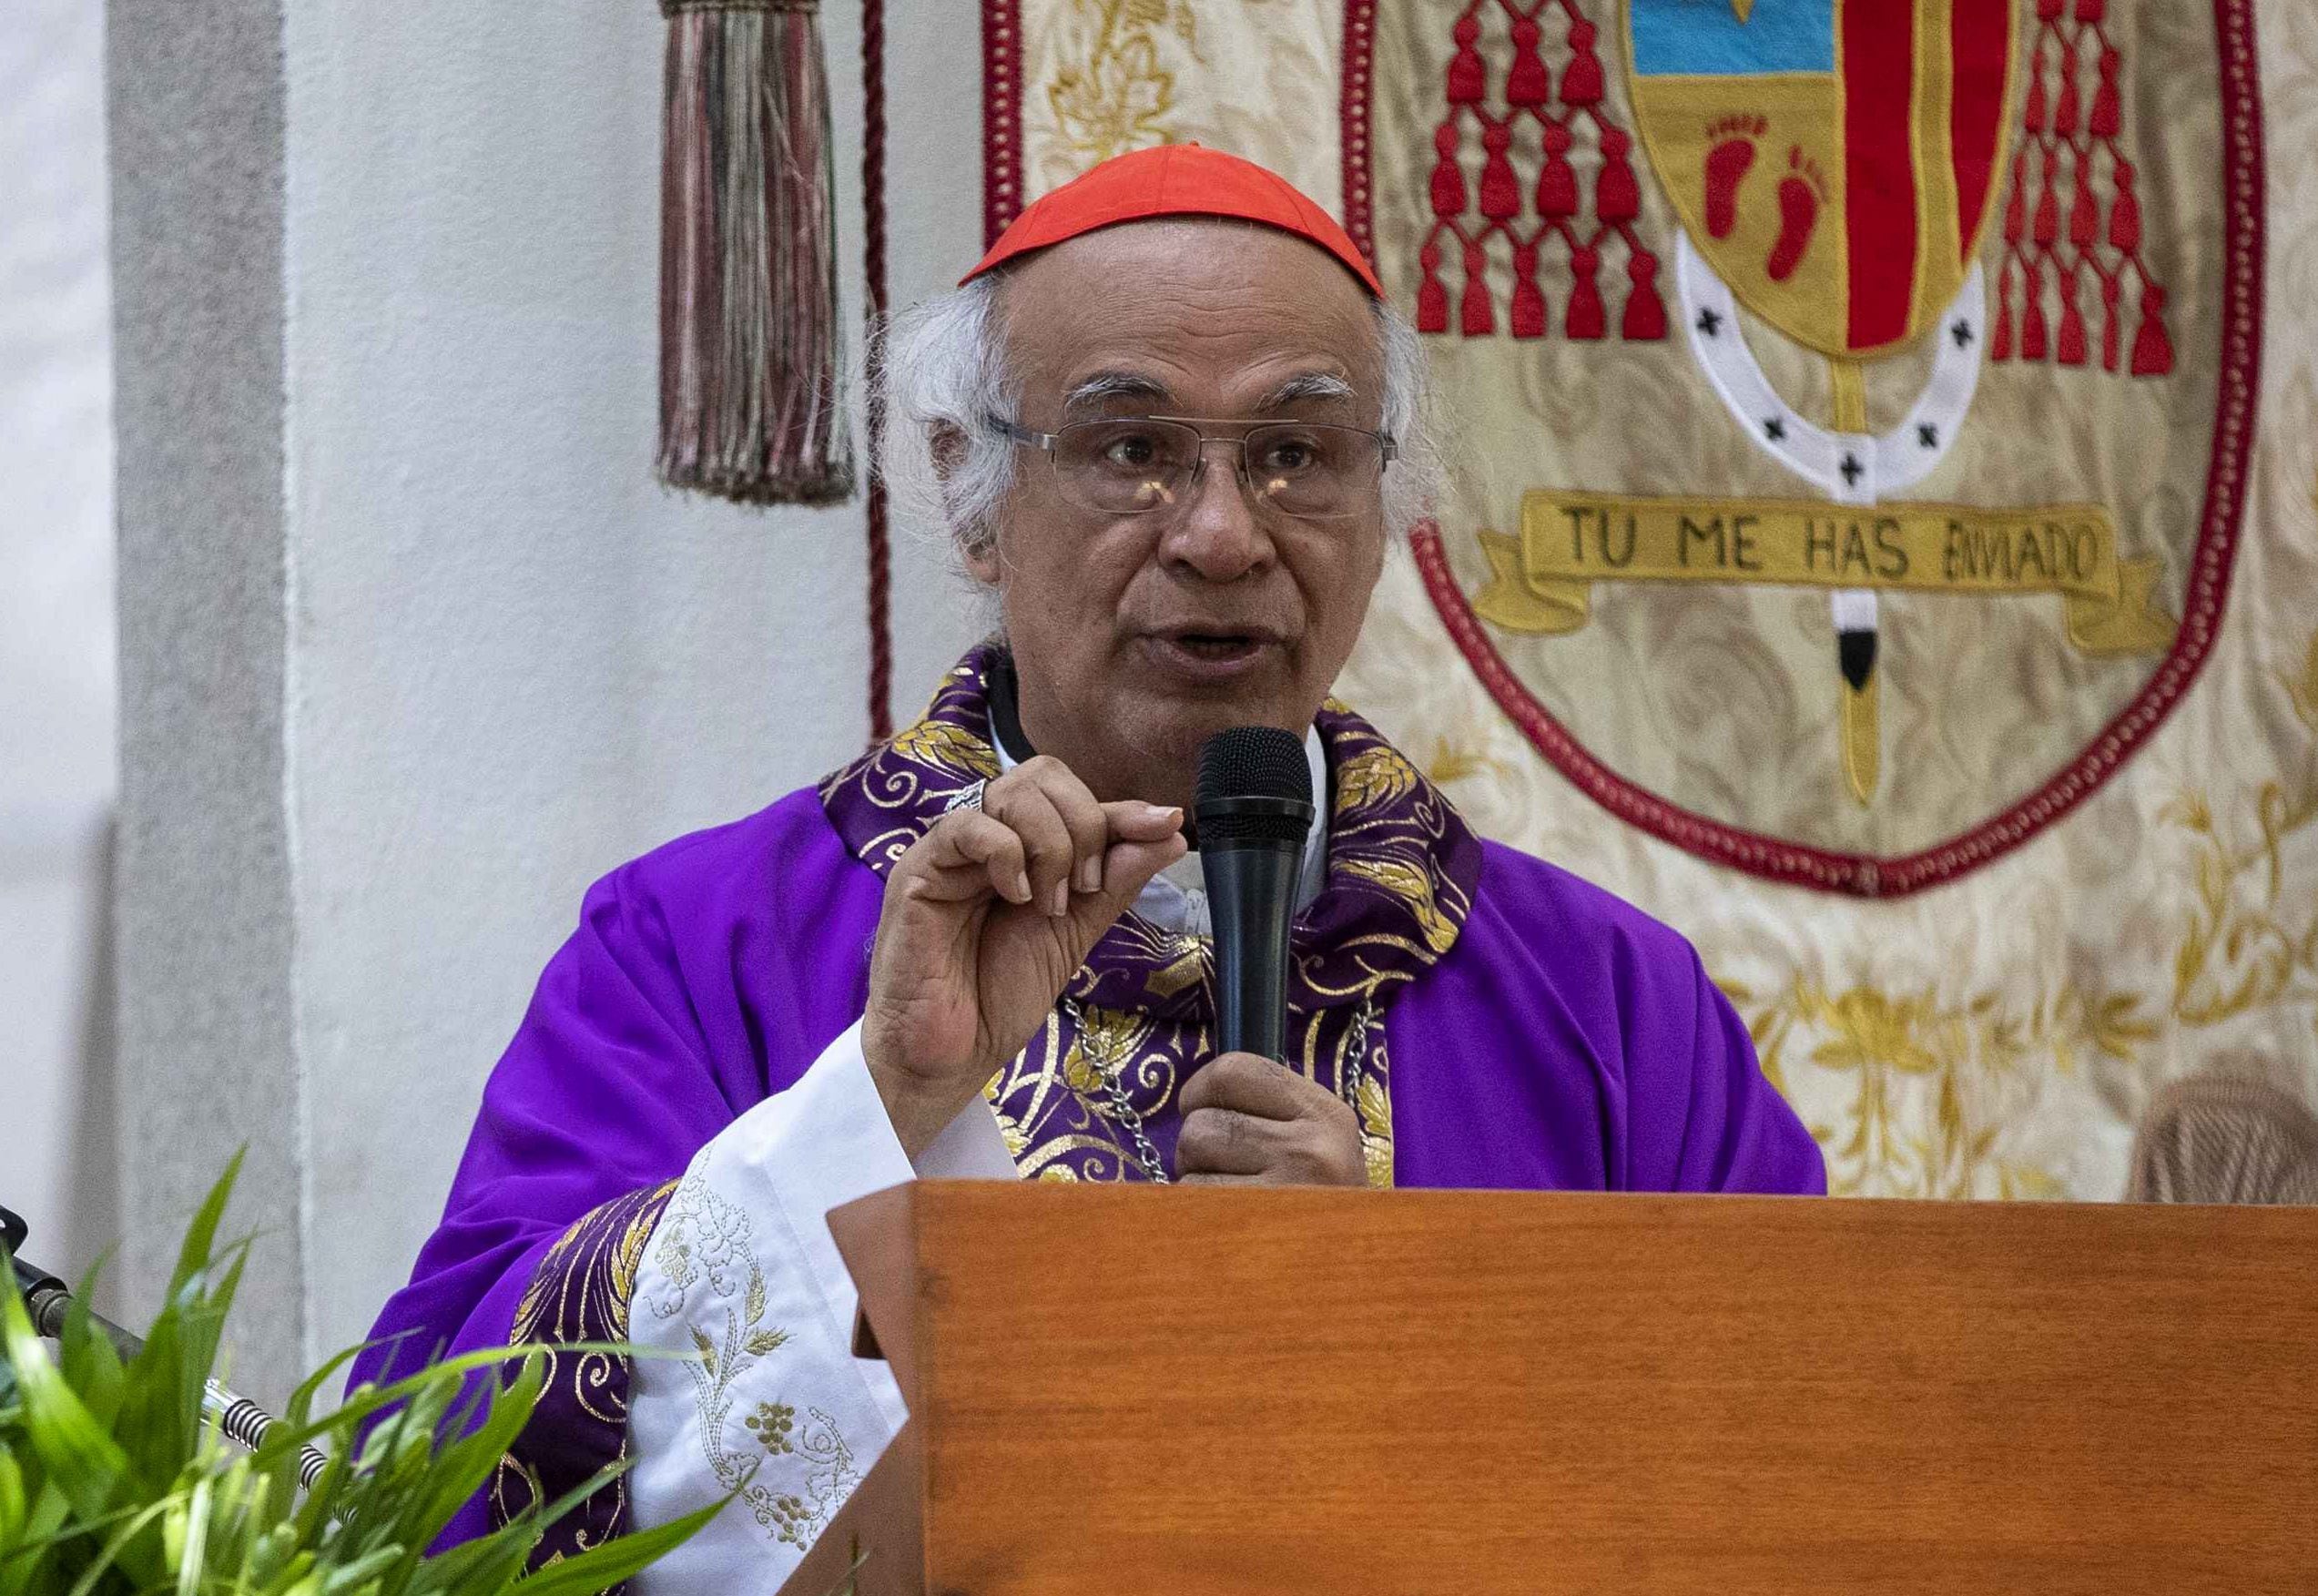 Cardenal nicaragüense expresa cercanía con familias de sacerdotes arrestados y pide orar